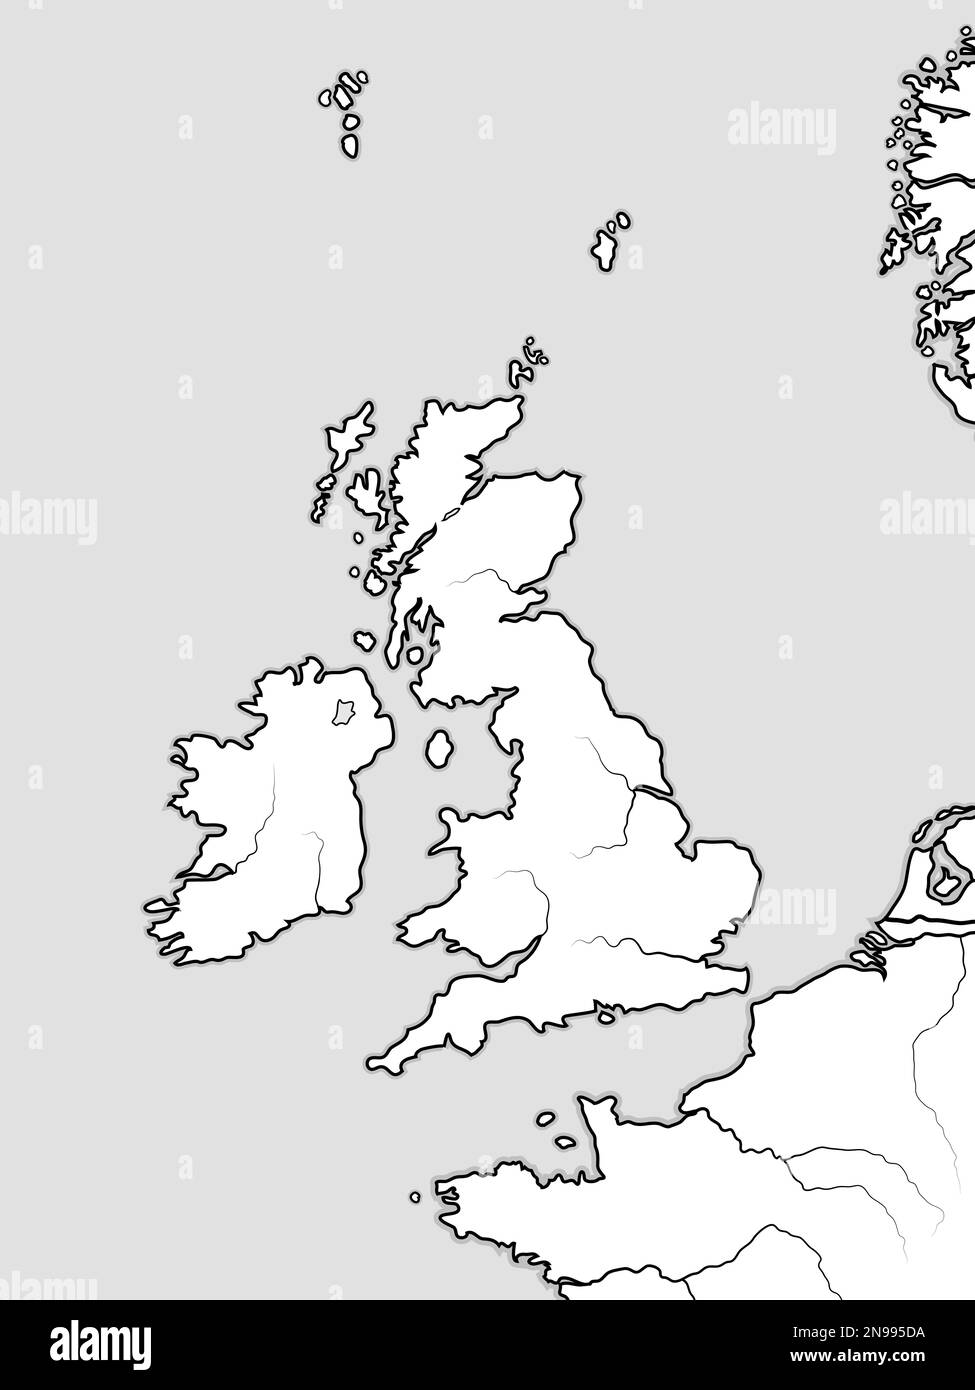 Mappa delle TERRE INGLESI: La Gran Bretagna (Regno Unito) â Inghilterra, Scozia, Galles e Irlanda. Le Isole Britanniche, il Mare del Nord, il Foto Stock